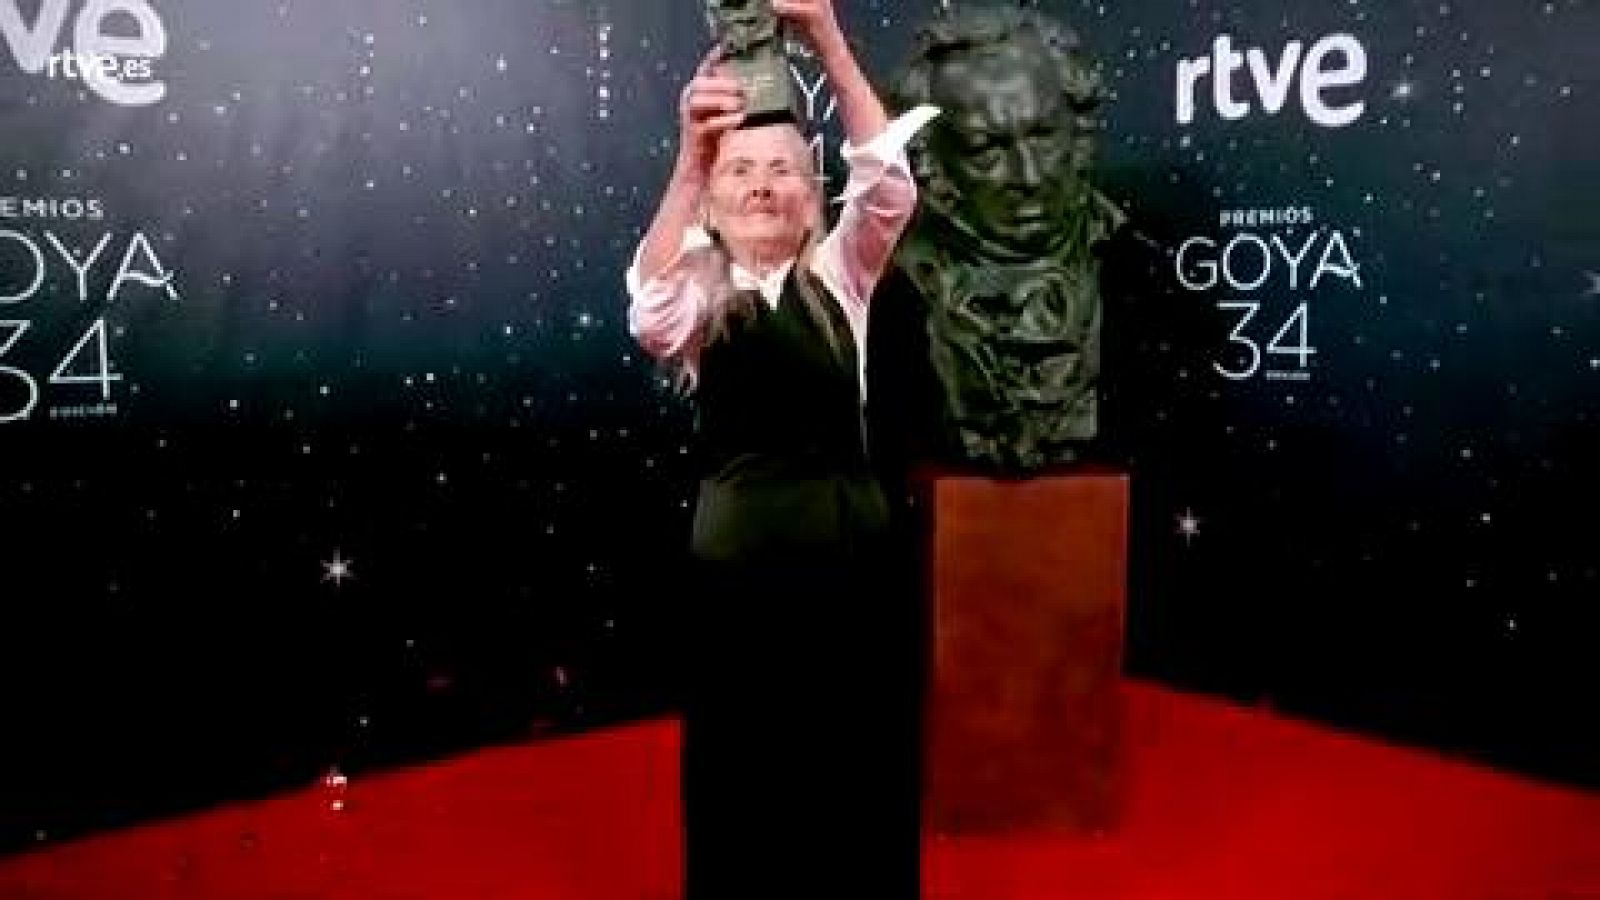 Premios Goya - Benedicta Sánchez posa con su Goya en la cámara glamur